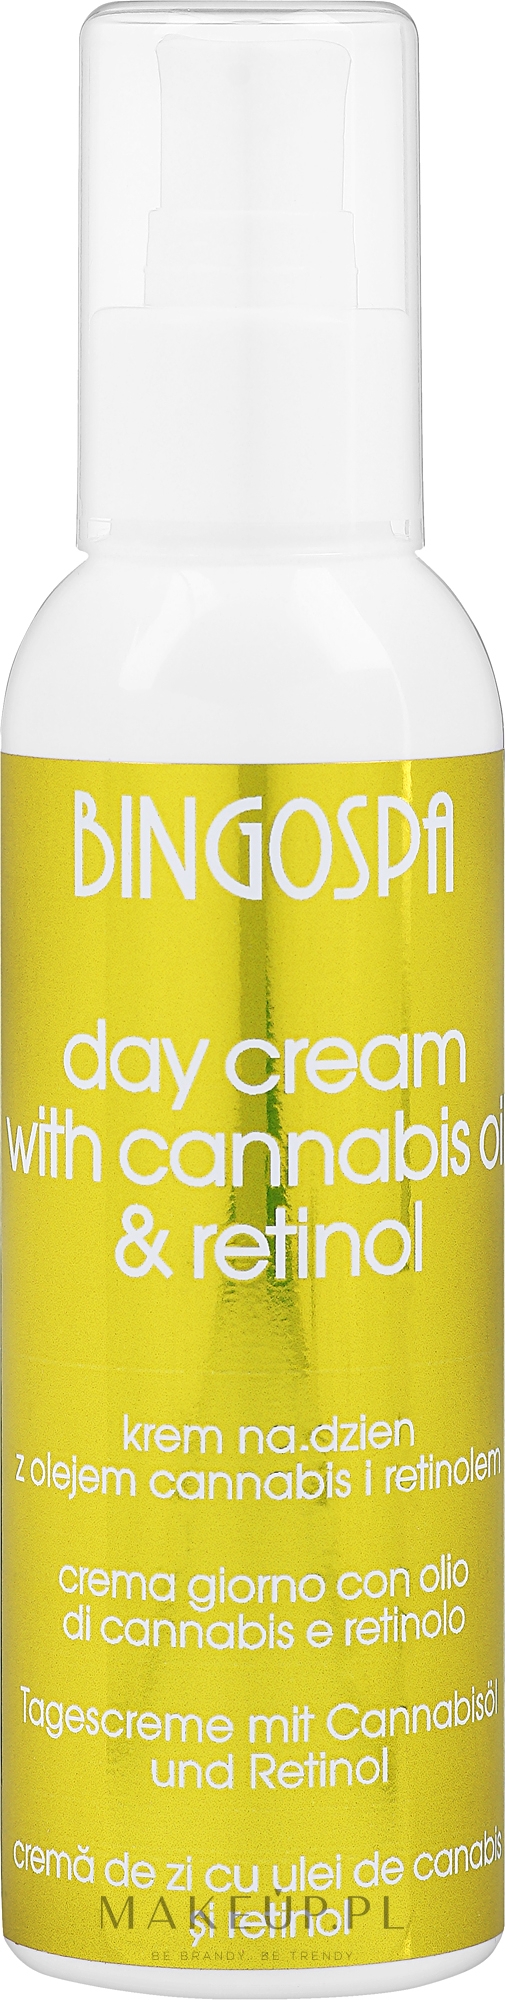 Krem na dzień z olejem konopnym i retinolem - BingoSpa Day Cream With Cannabis Oil Retinol And Zea Mays — Zdjęcie 135 g